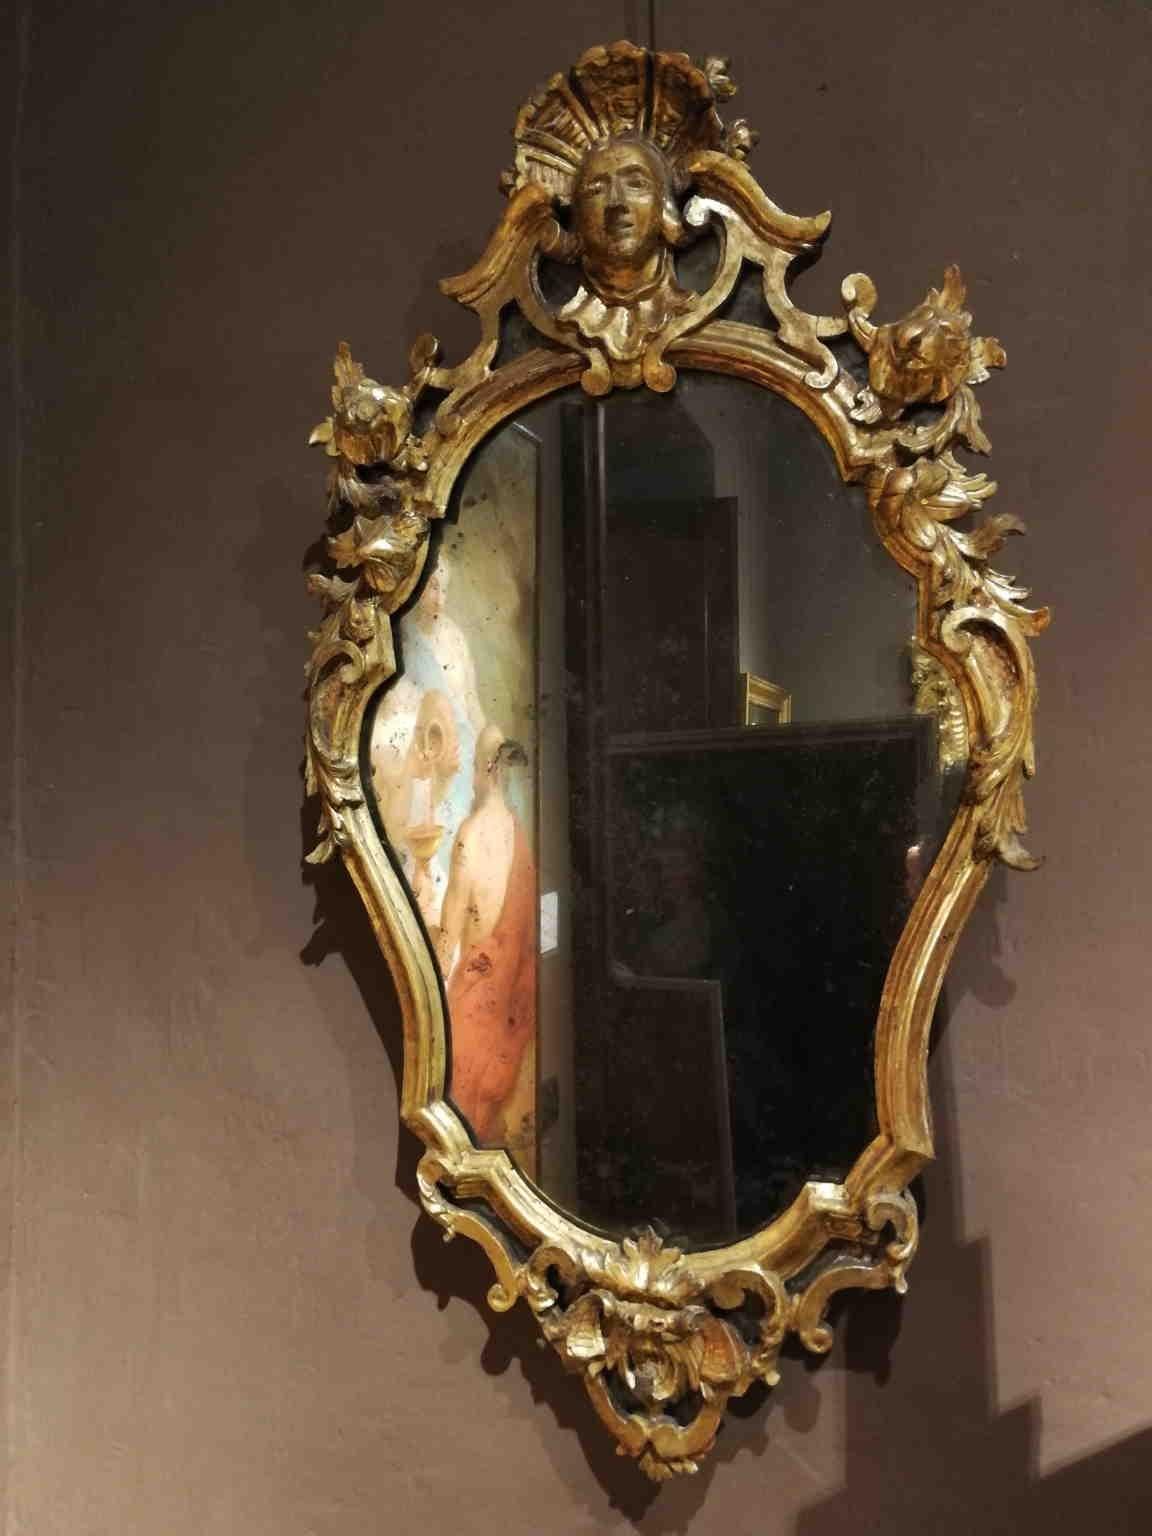 Diese beiden Rokoko-Wandspiegel haben ihre ursprünglichen Gläser behalten.
Sie sind aus vergoldetem Holz geschnitzt und mit einer grotesken Dekoration versehen, die sich durch Blumenranken auszeichnet. Oben befindet sich ein Frauenkopf mit